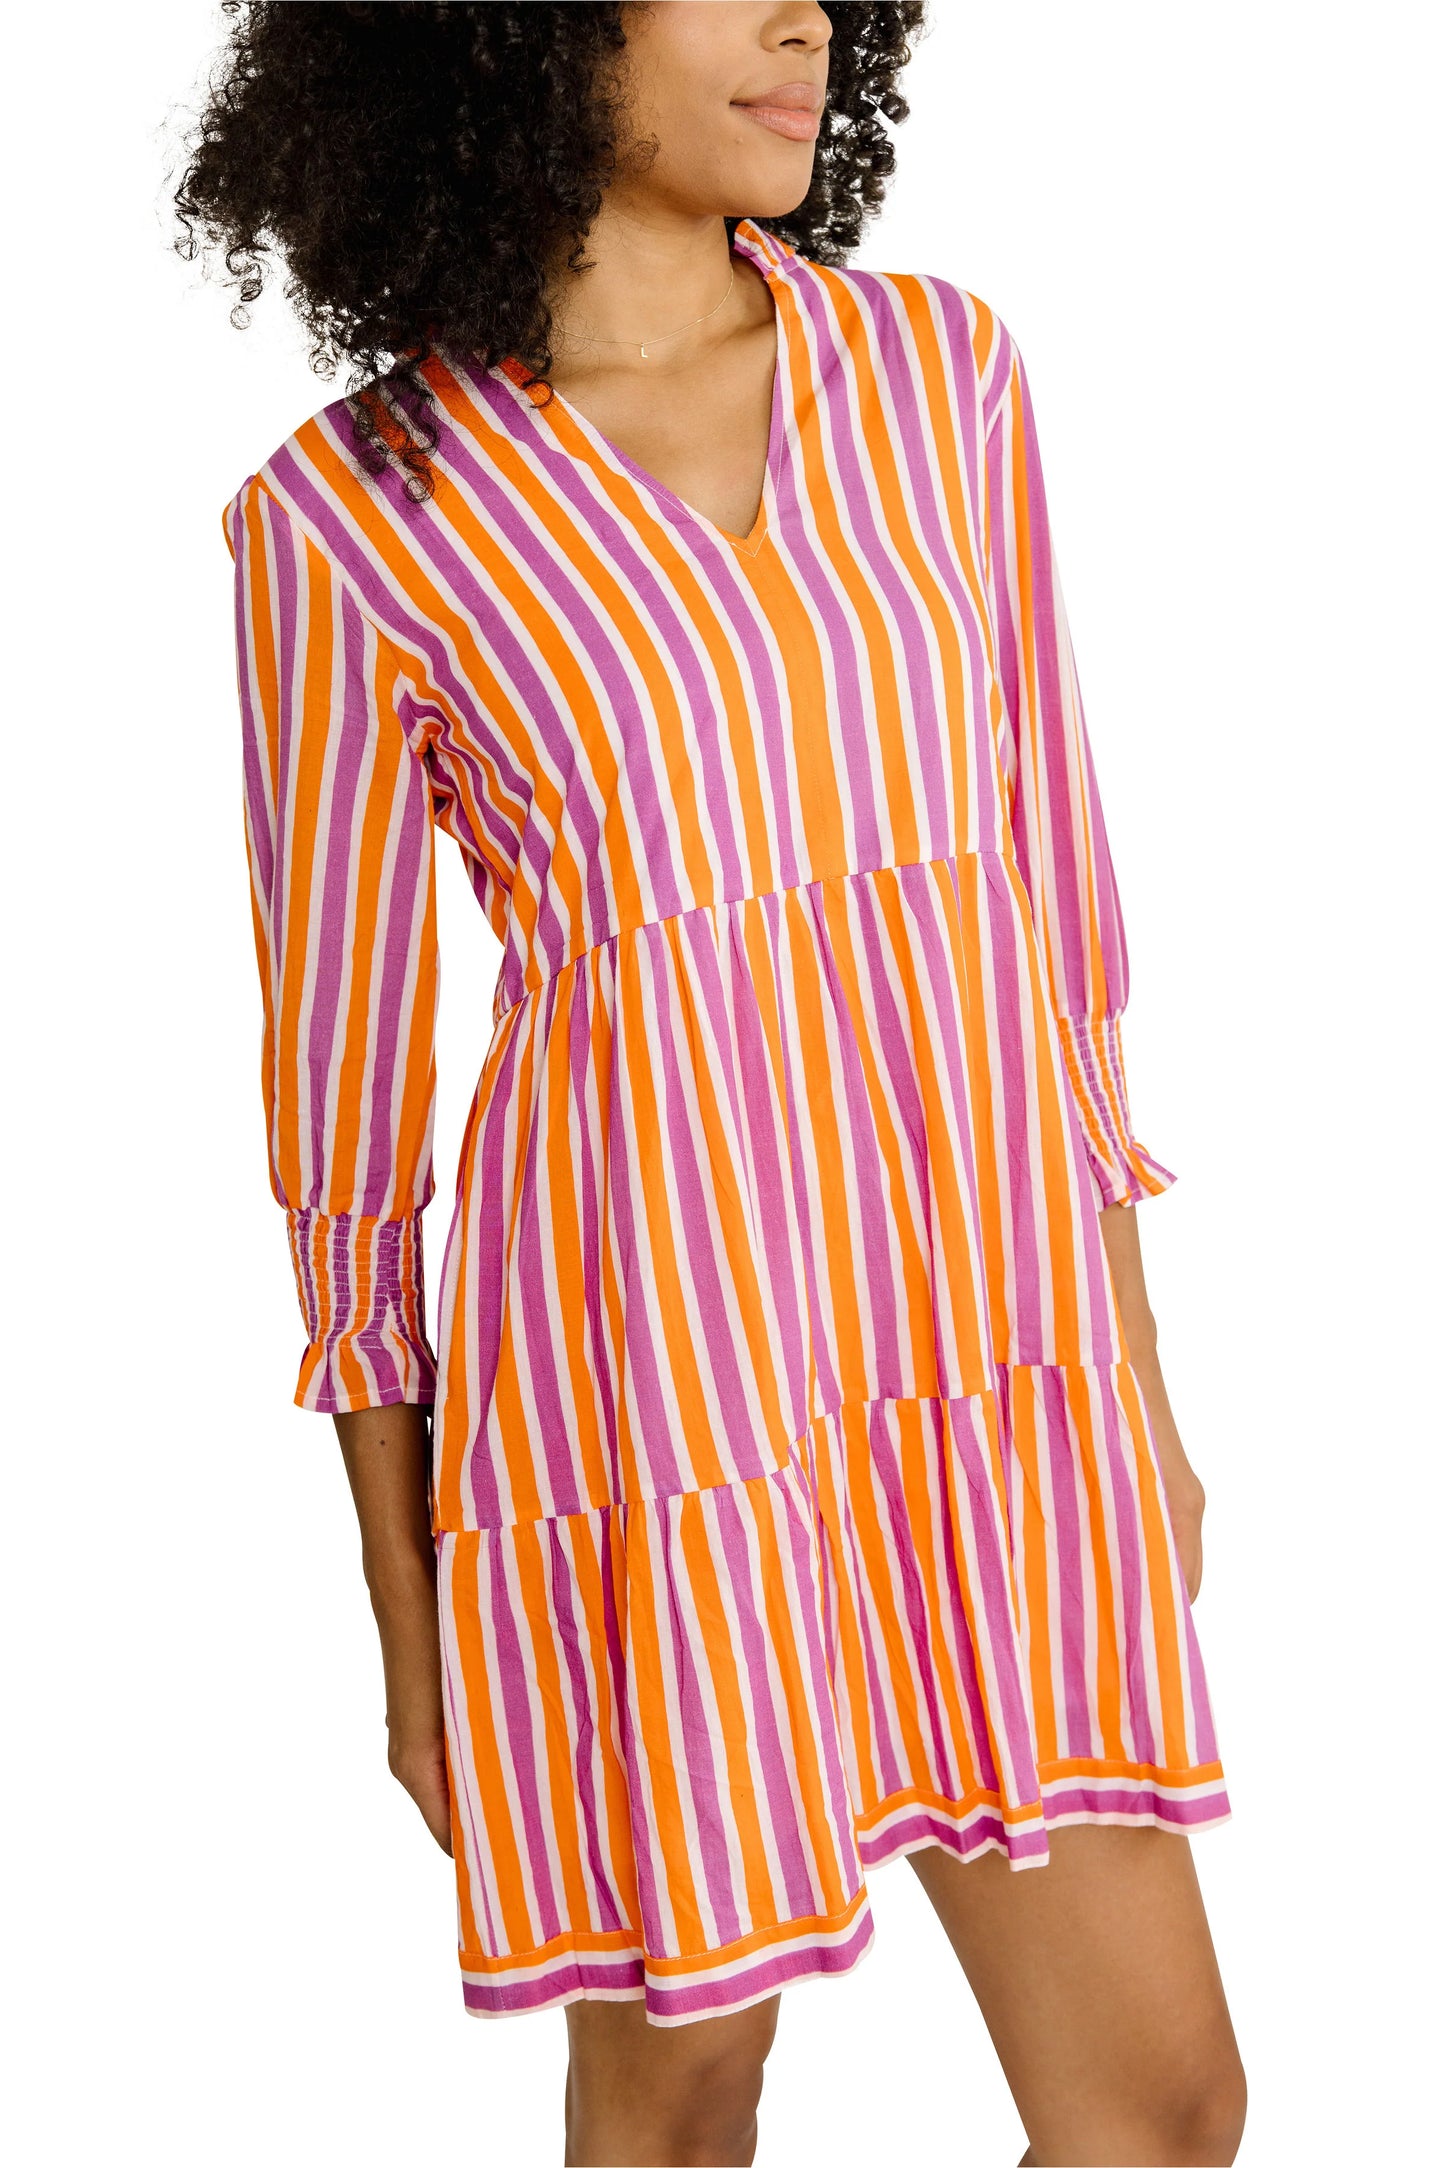 Charleston Shoe Co. Alexis Dress - Sorbet Stripe